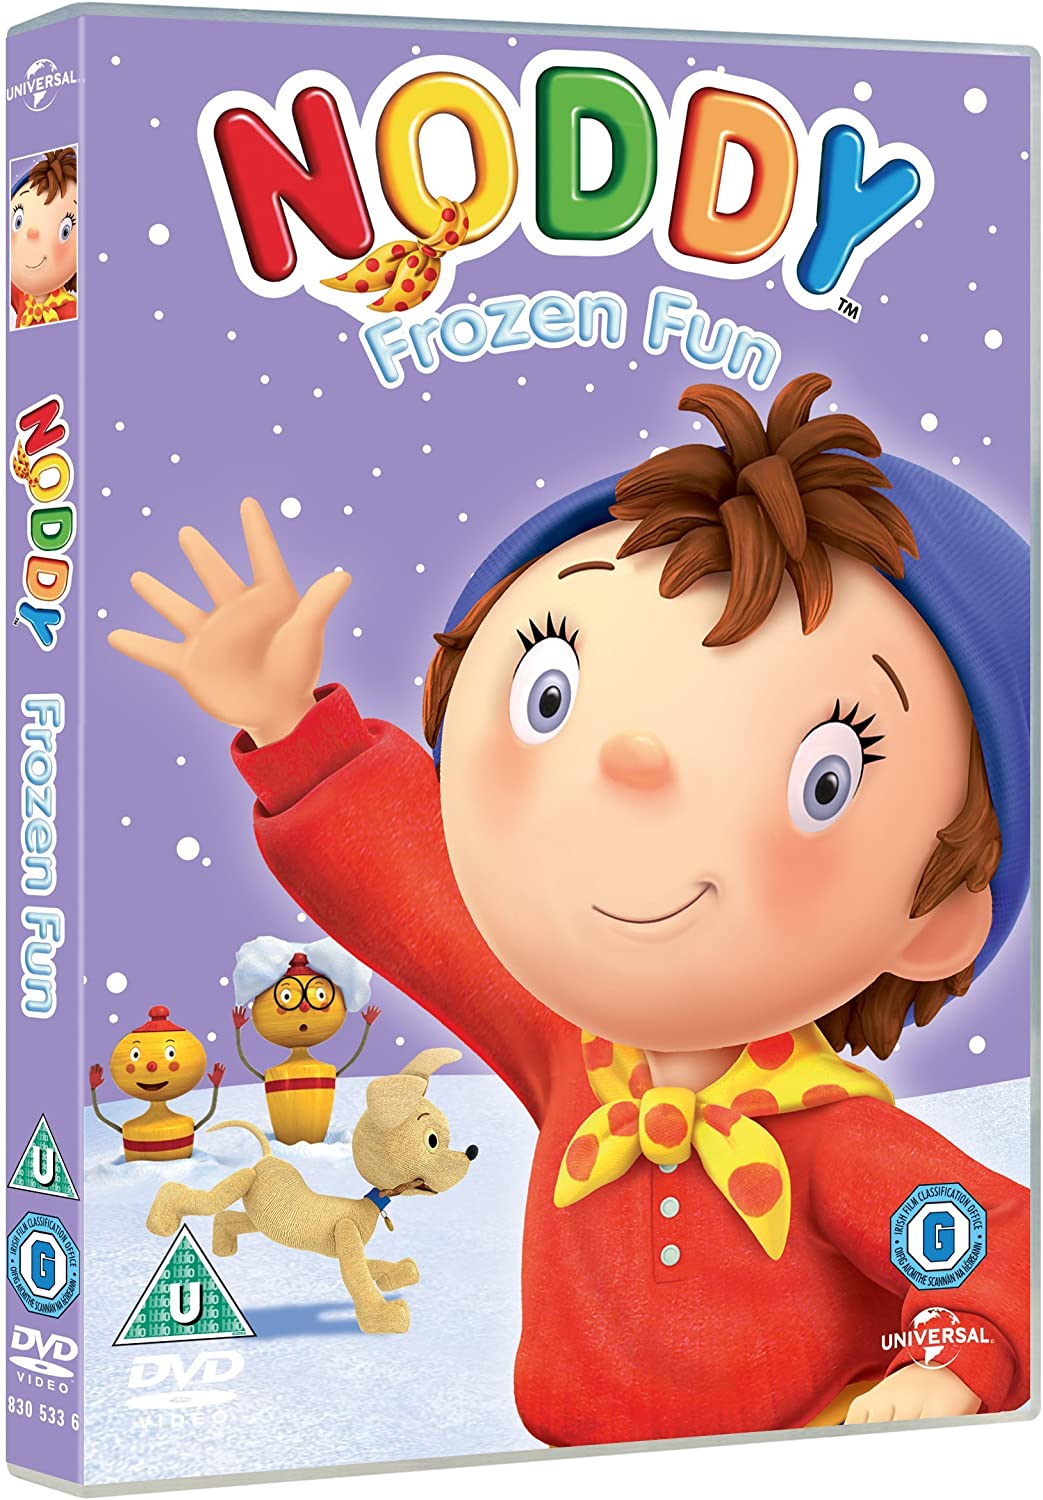 Noddy in Toyland - Frozen Fun [2009] - Animation [DVD]